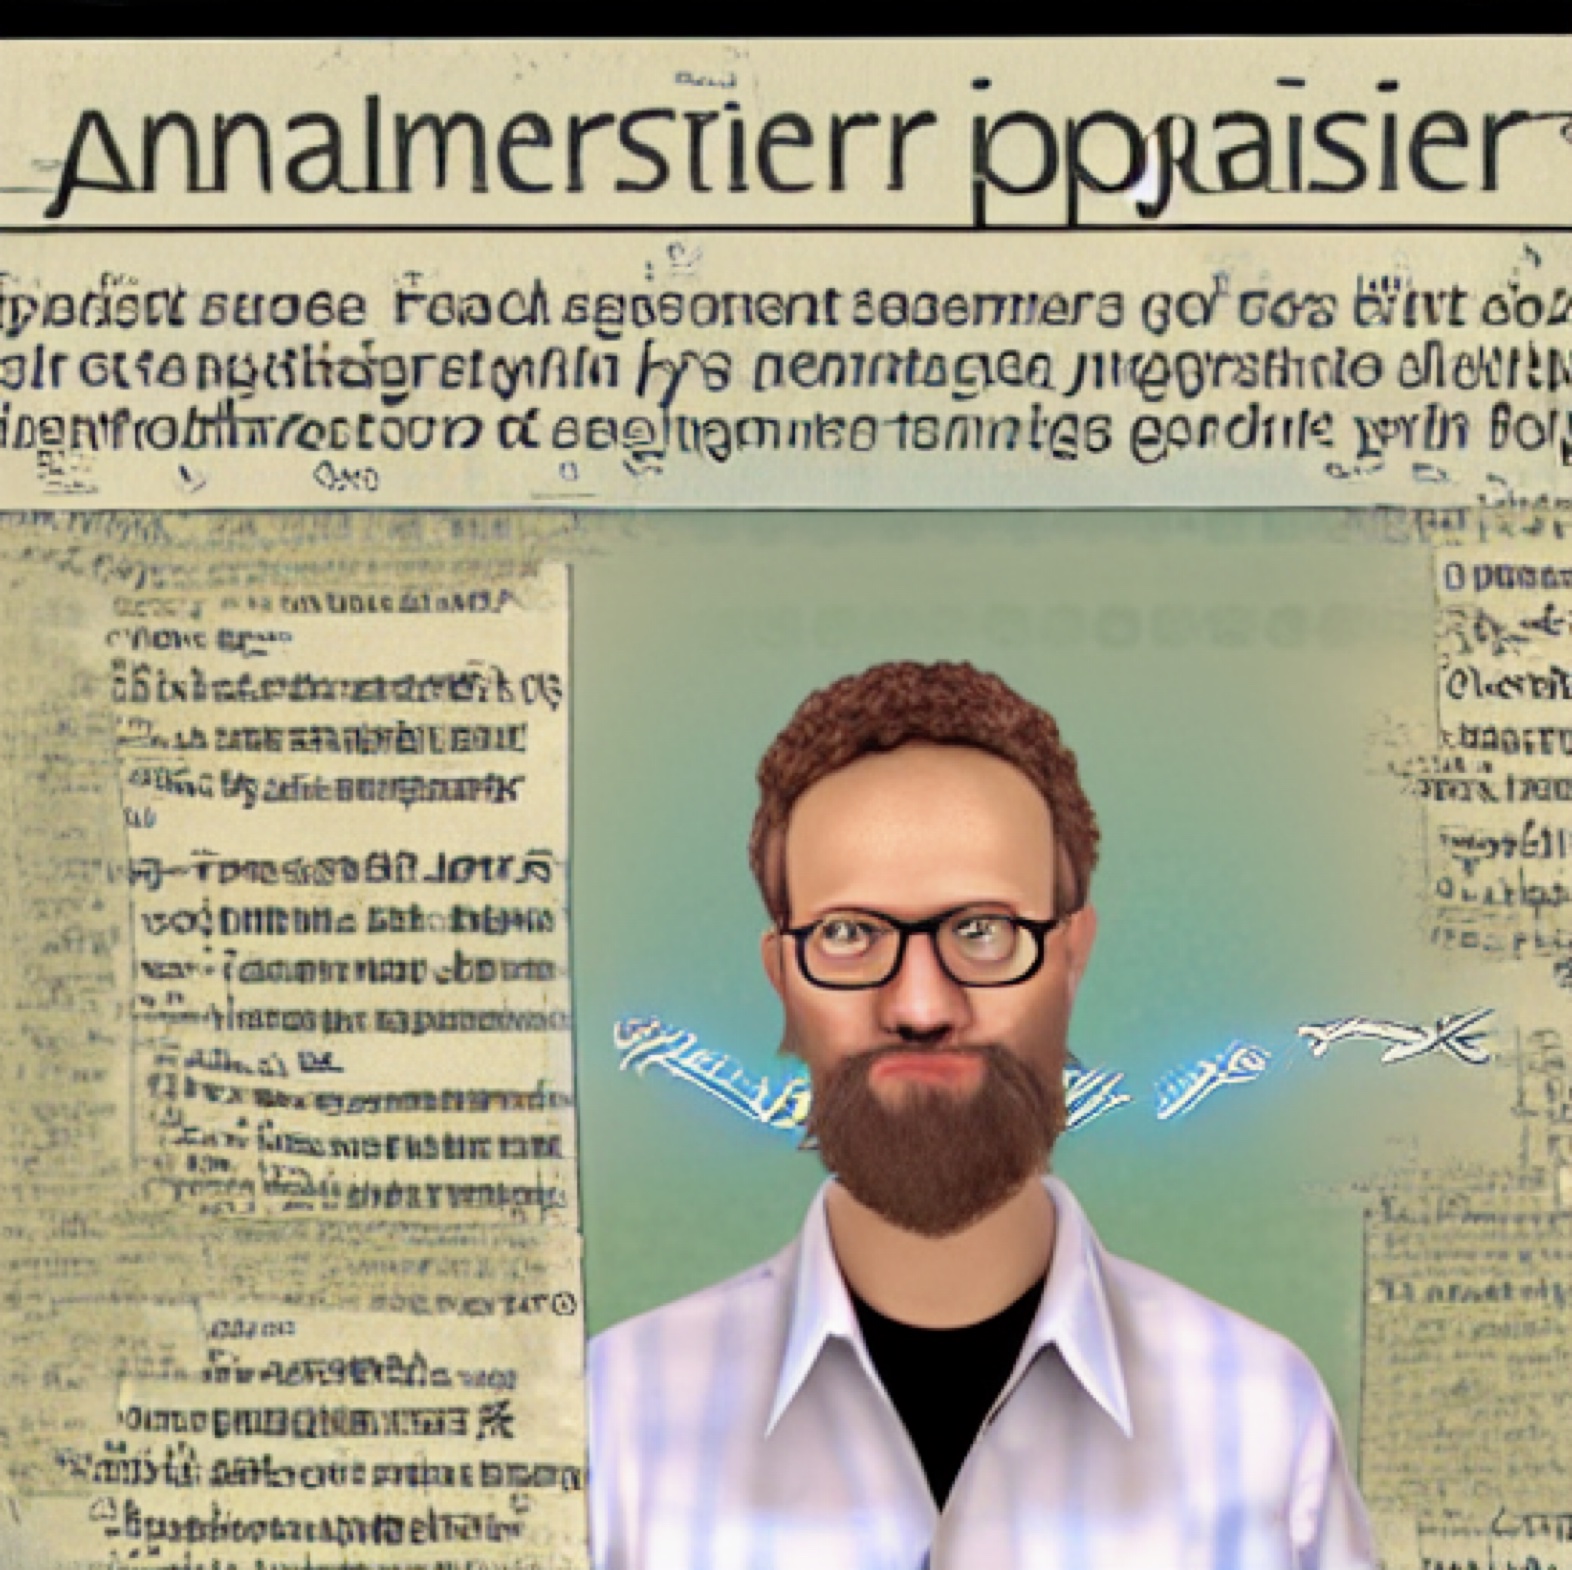 Stable Diffusion: "A journalist who is also a bad programmer" - Bild eines bärtigen Mannes mit Brille im Hemd, umrahmt von einer Zeitungsseite